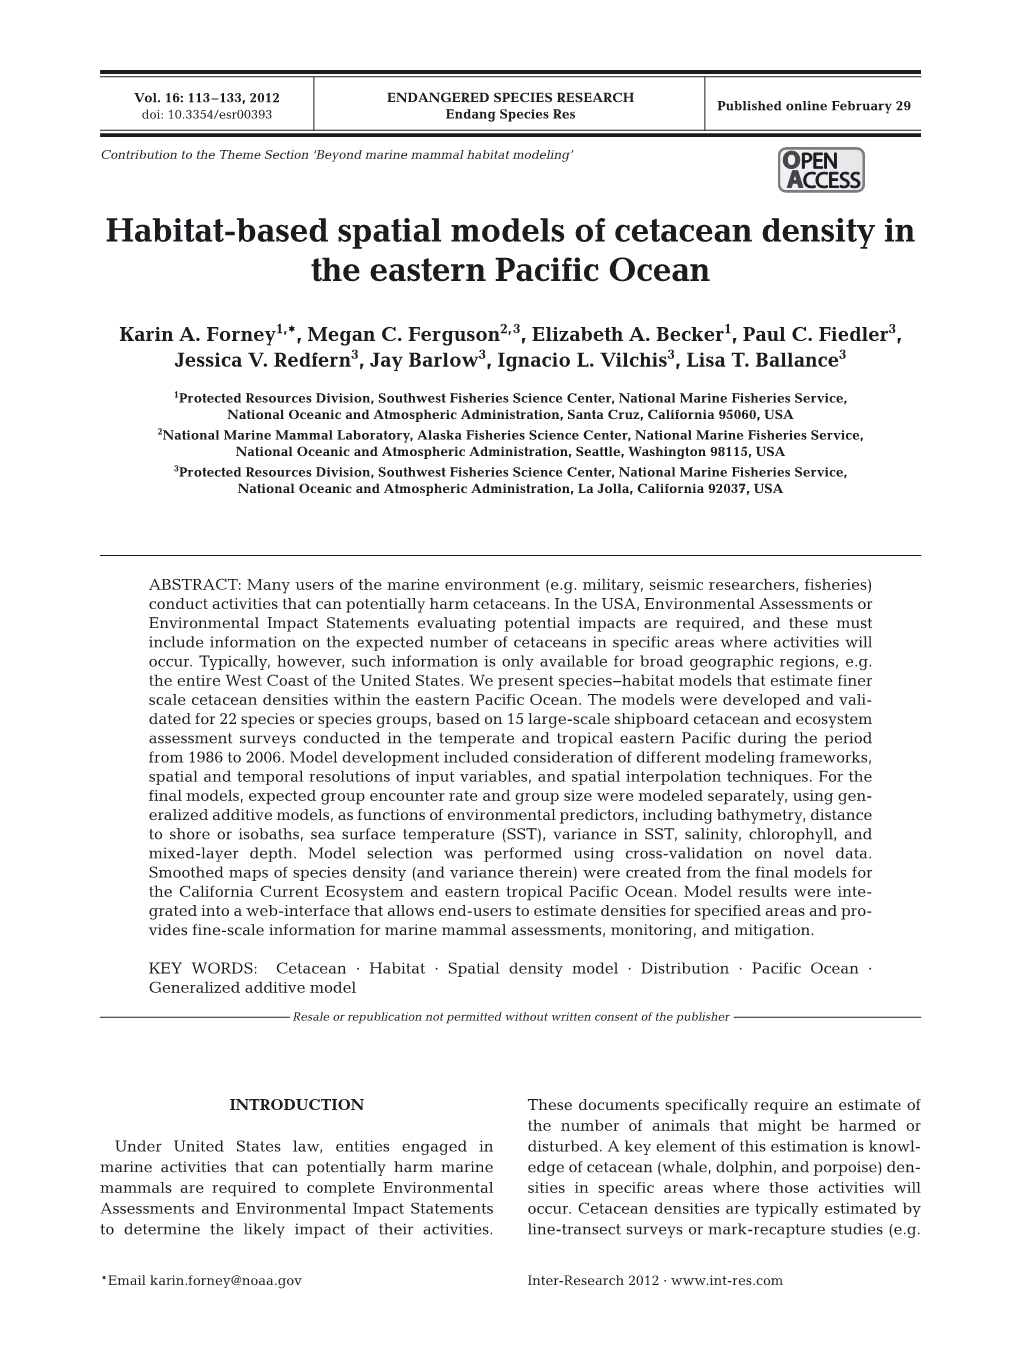 Habitat-Based Spatial Models of Cetacean Density in the Eastern Pacific Ocean